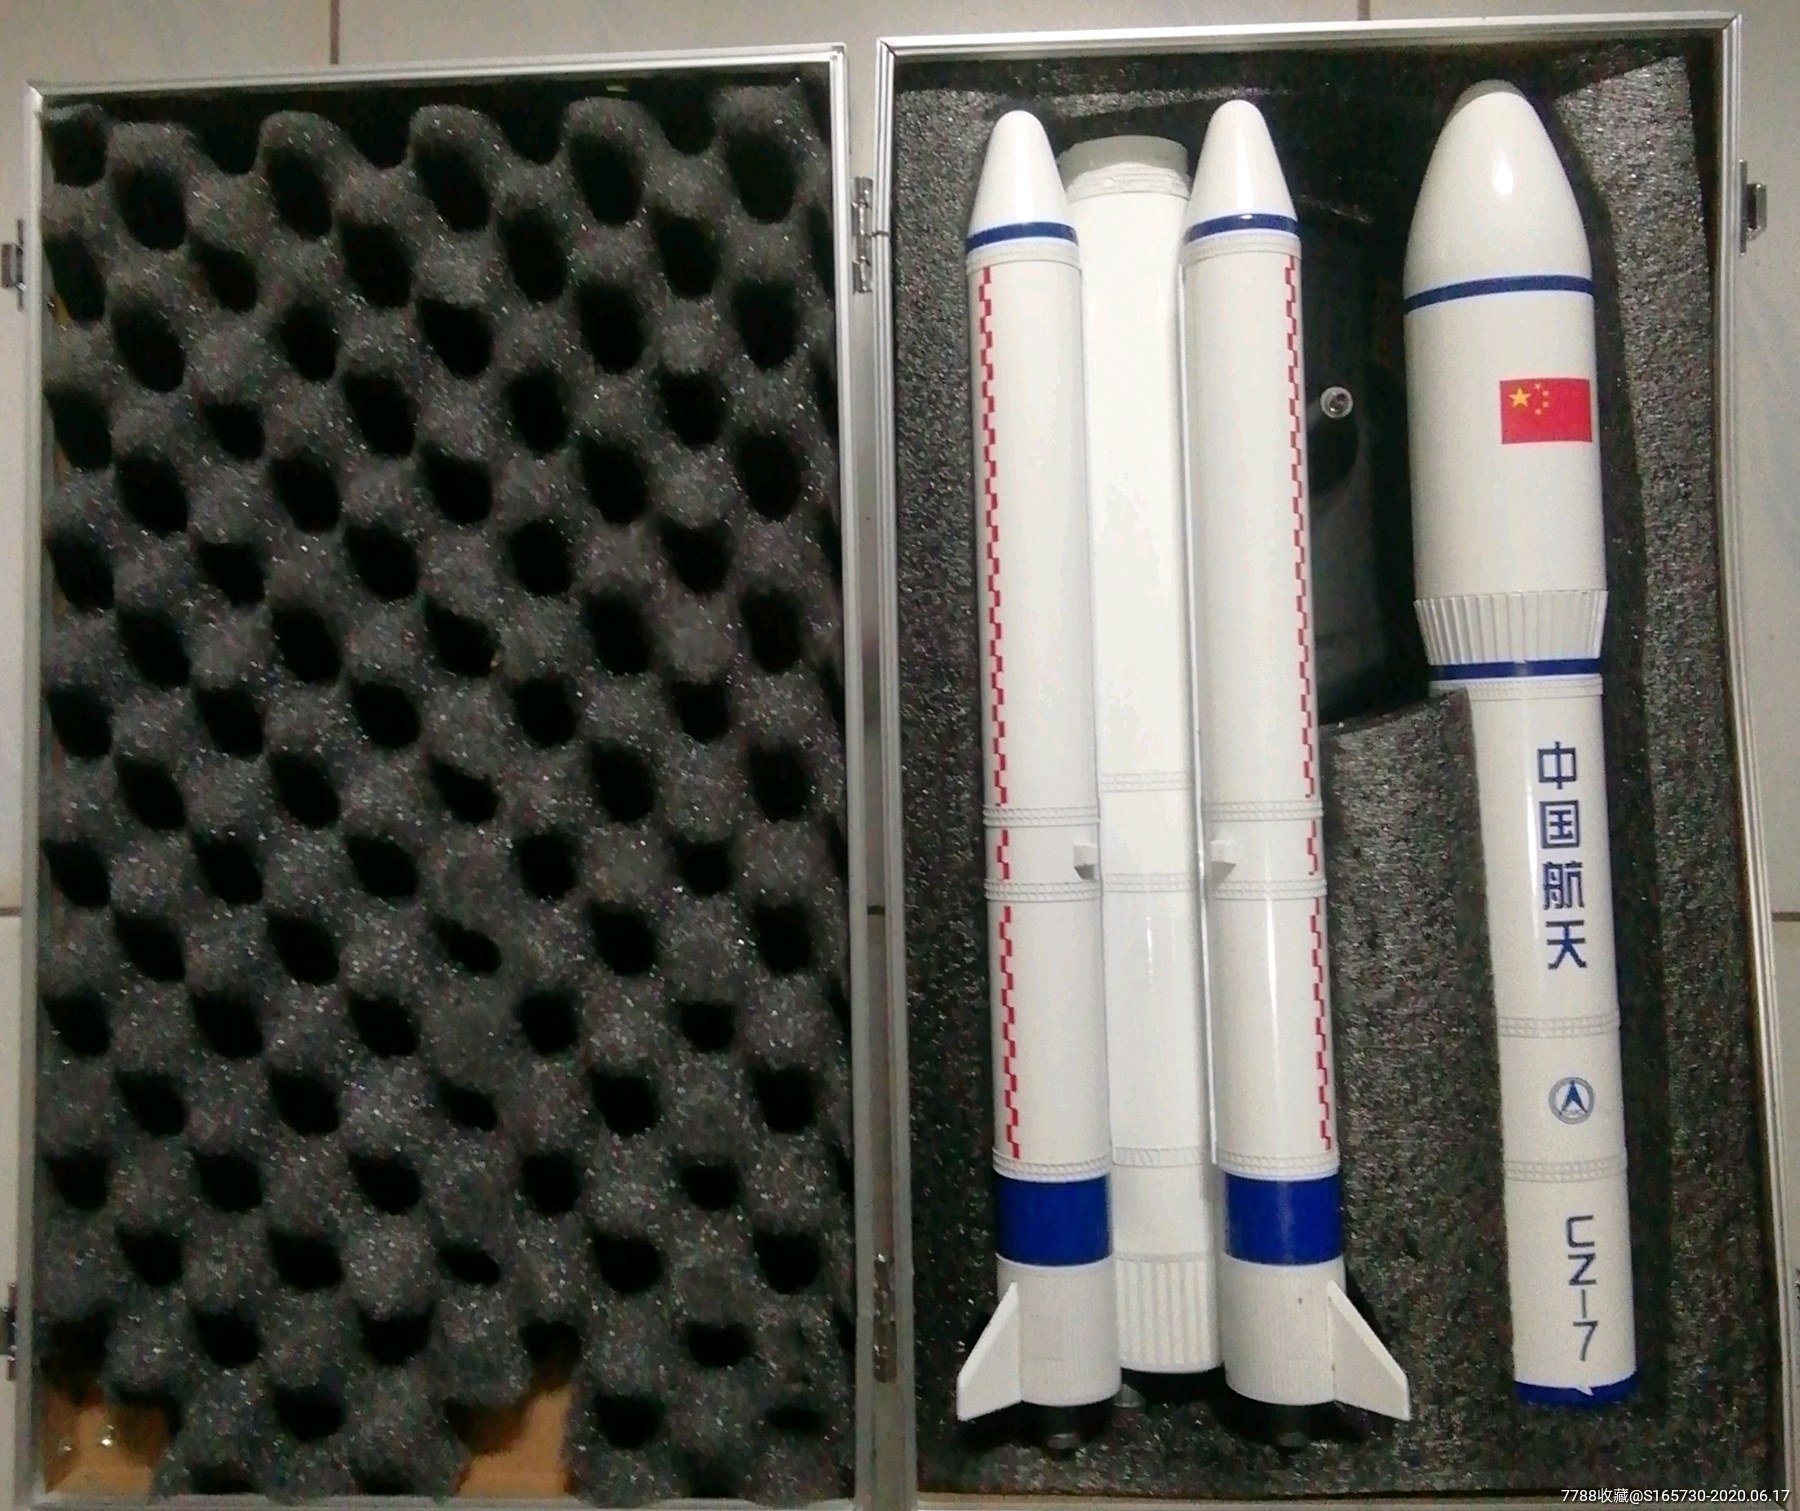 长征7号运载火箭模型(1:65)